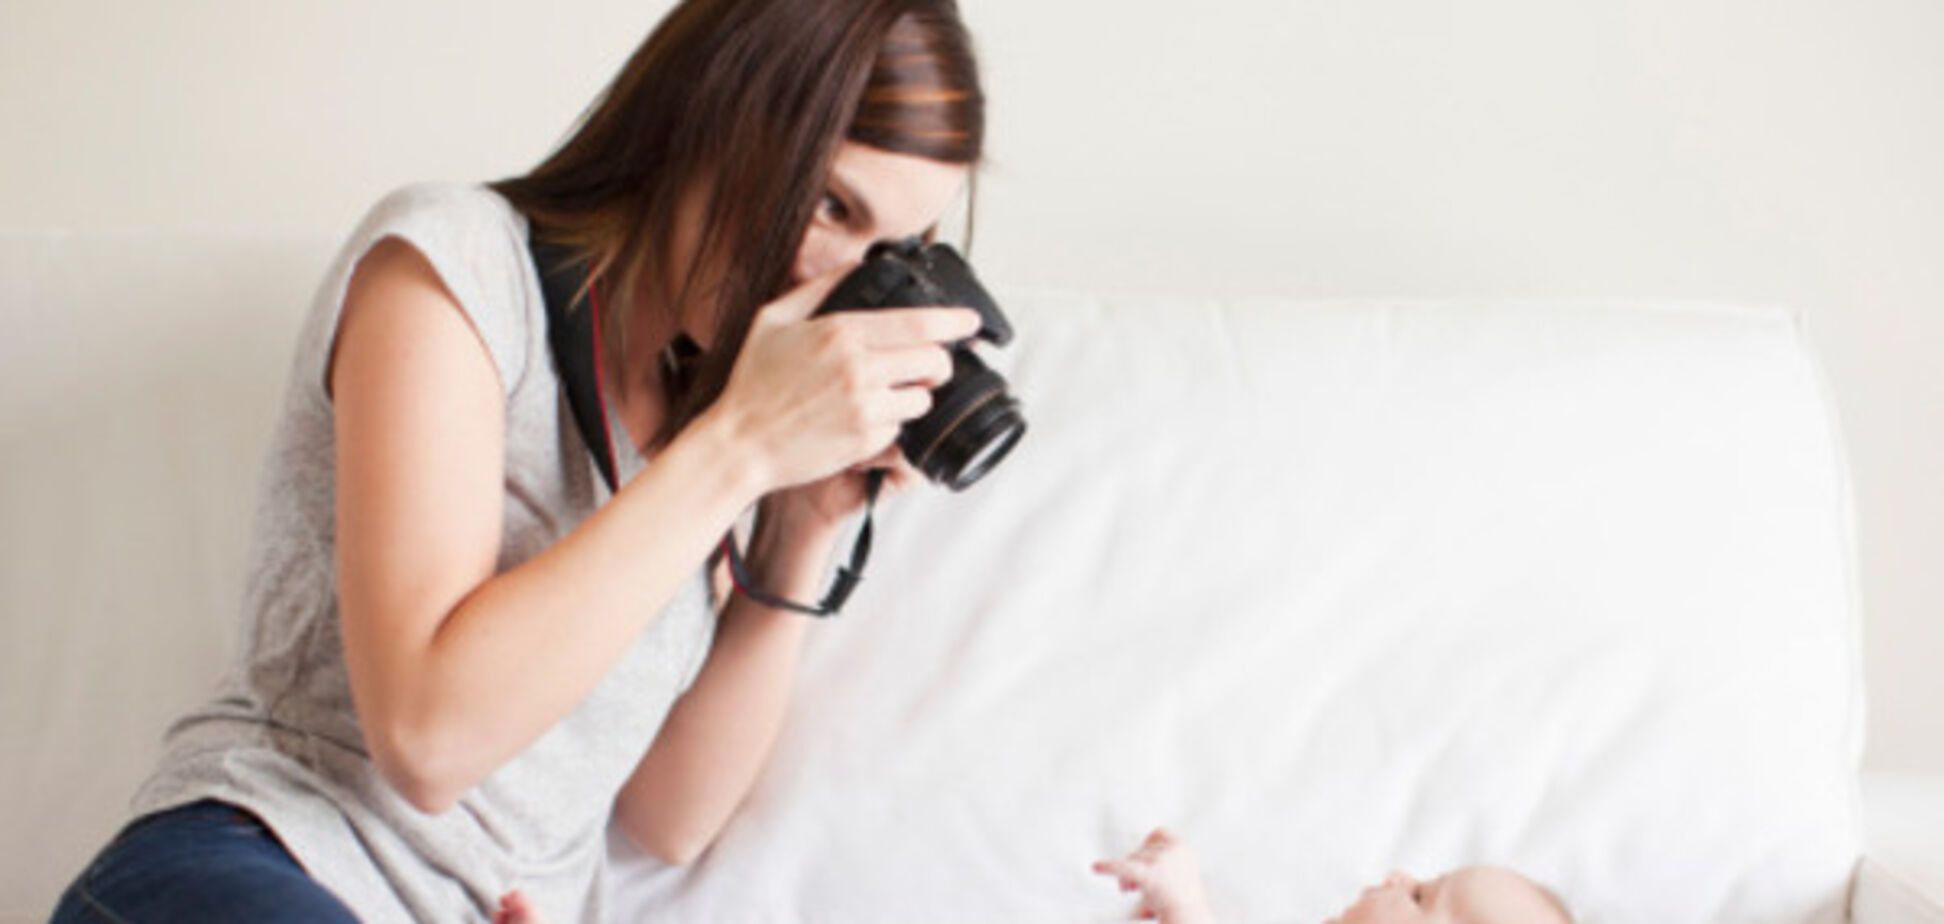 Спалах фотоапарата допоможе розпізнати проблеми зі здоров'ям у дитини